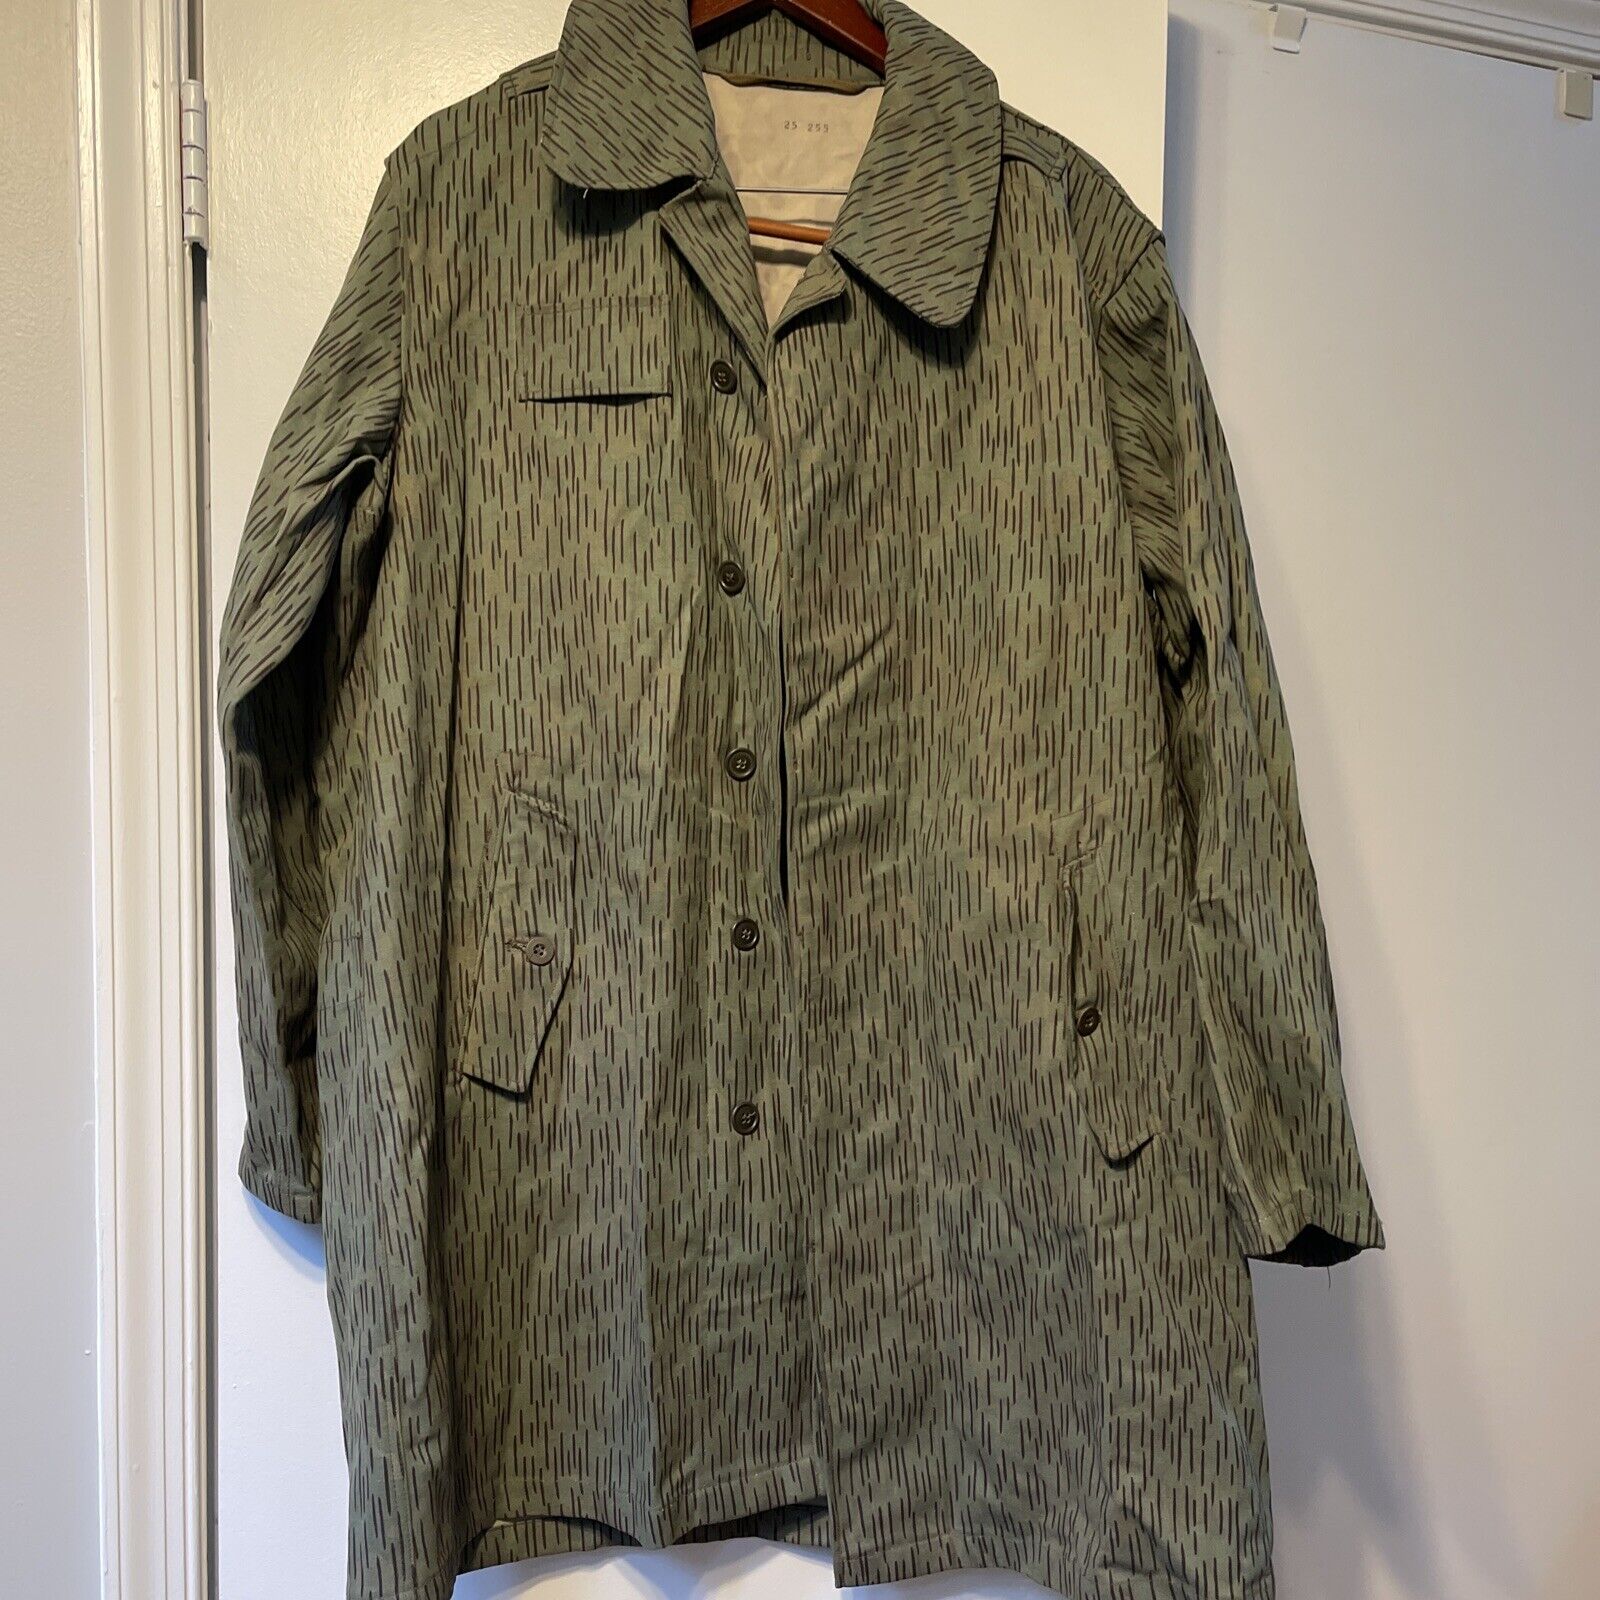 Vintage Czech Army Military Raindrop Camo Jacket Sz L/XL Coat Button Up 60s